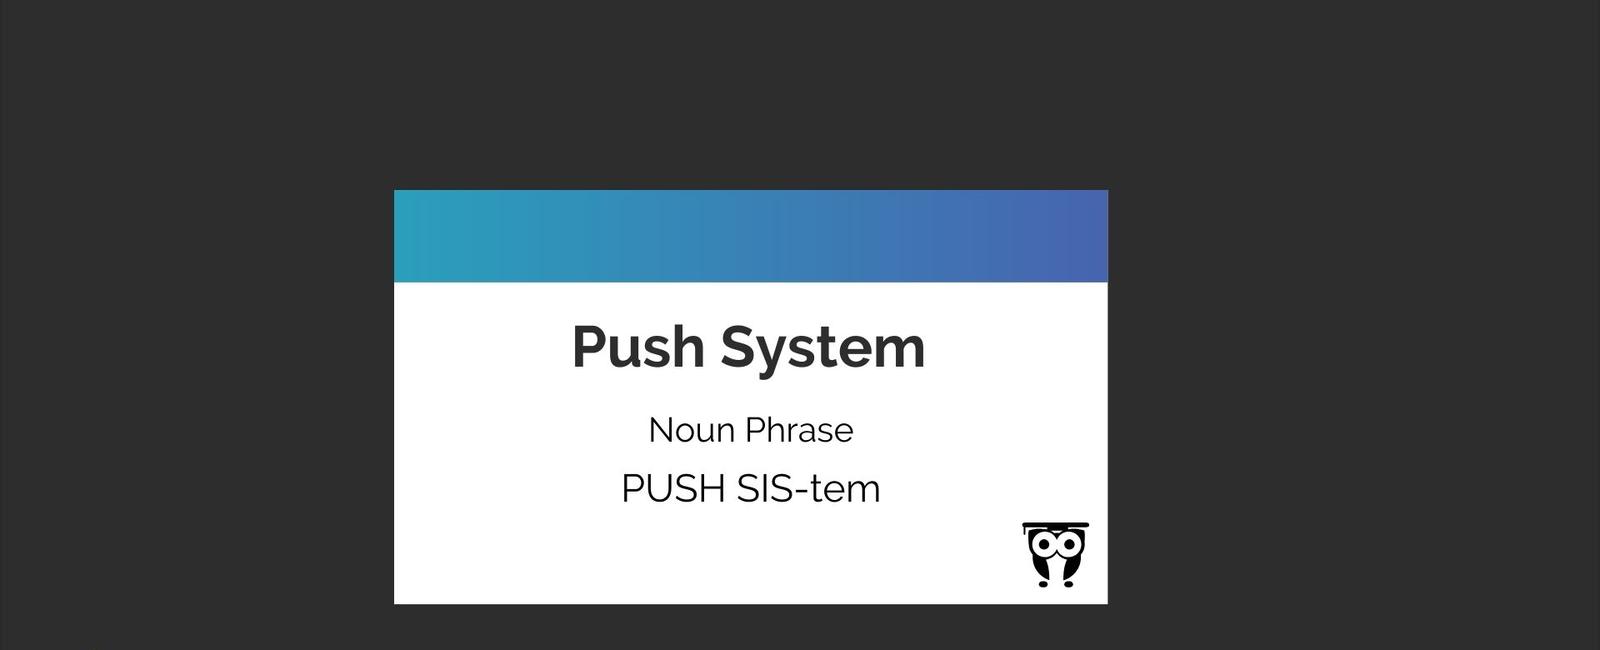 Push System